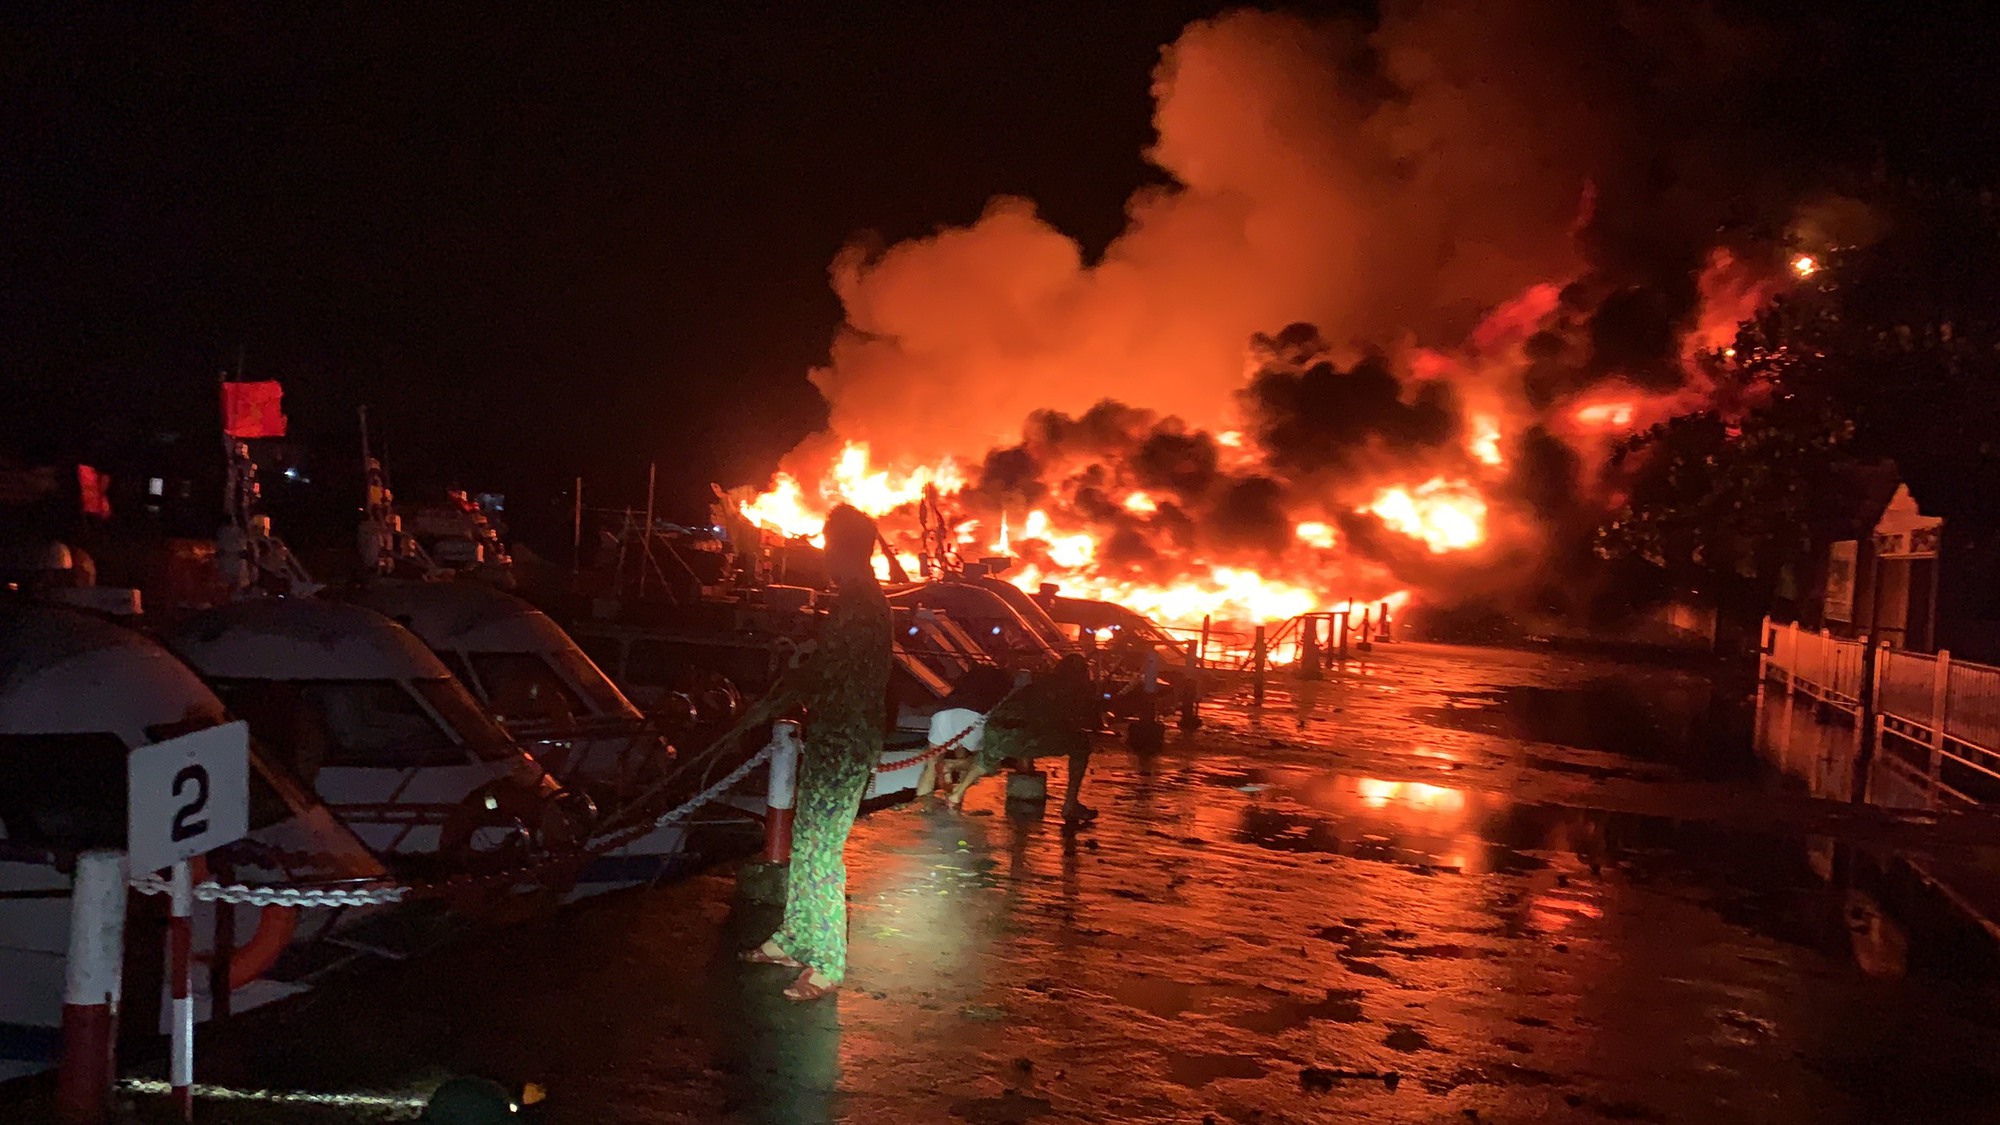 NÓNG - Quảng Nam: 8 chiếc tàu du lịch bốc cháy dữ dội trong đêm - Ảnh 1.